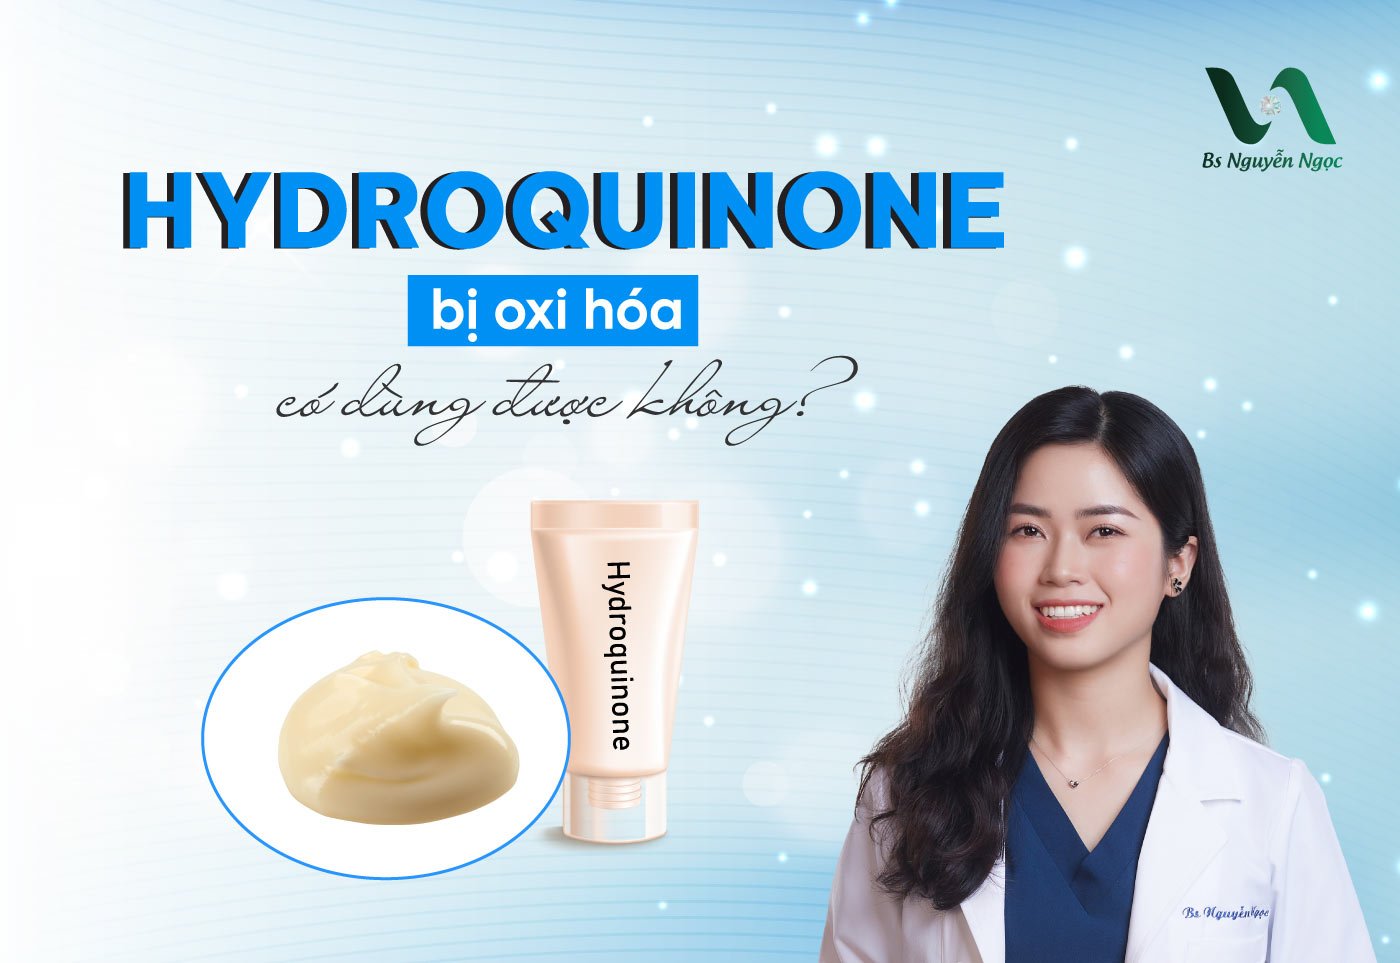 Hydroquinone bị oxi hóa có dùng được không?